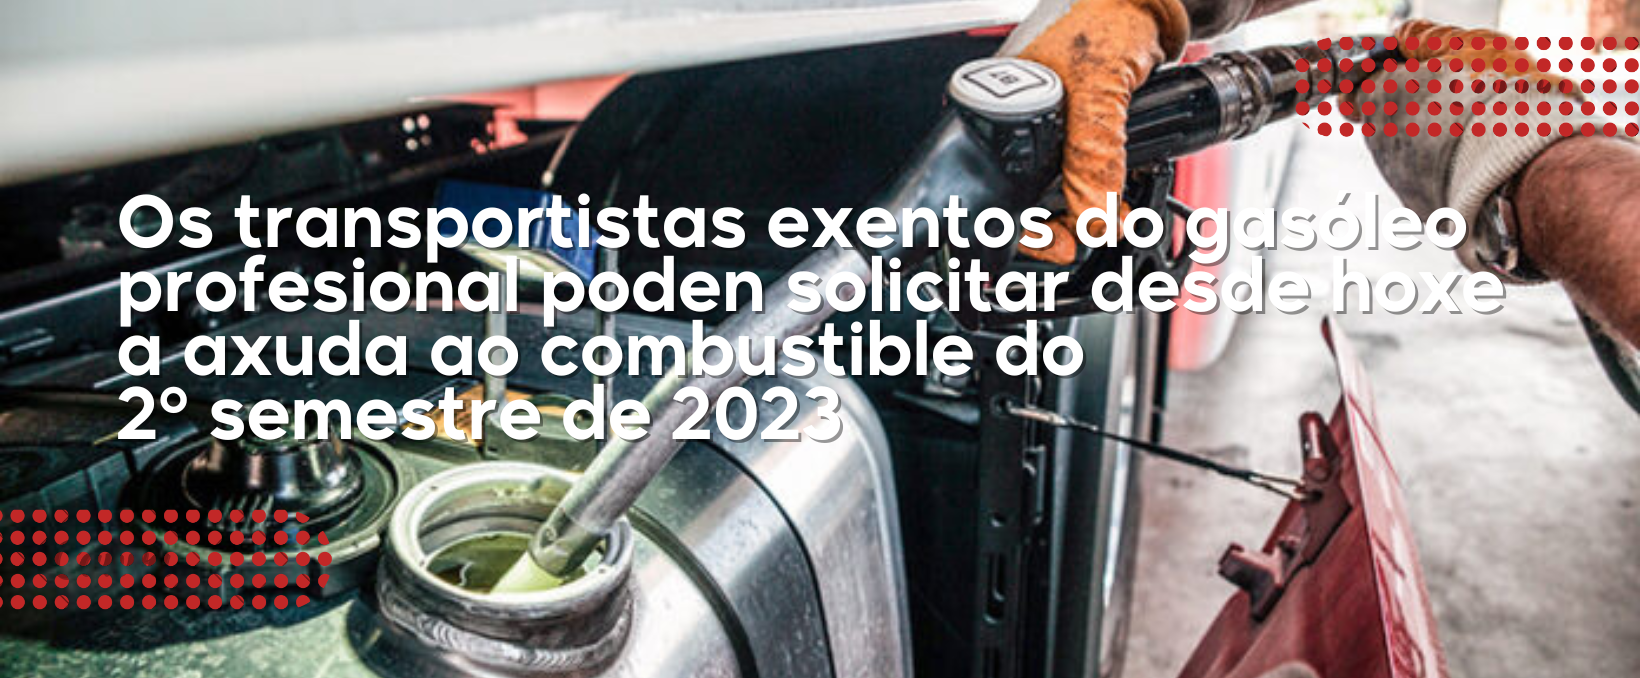 Os transportistas exentos do gasóleo profesional poden solicitar desde hoxe a axuda ao combustible do  2º semestre de 2023